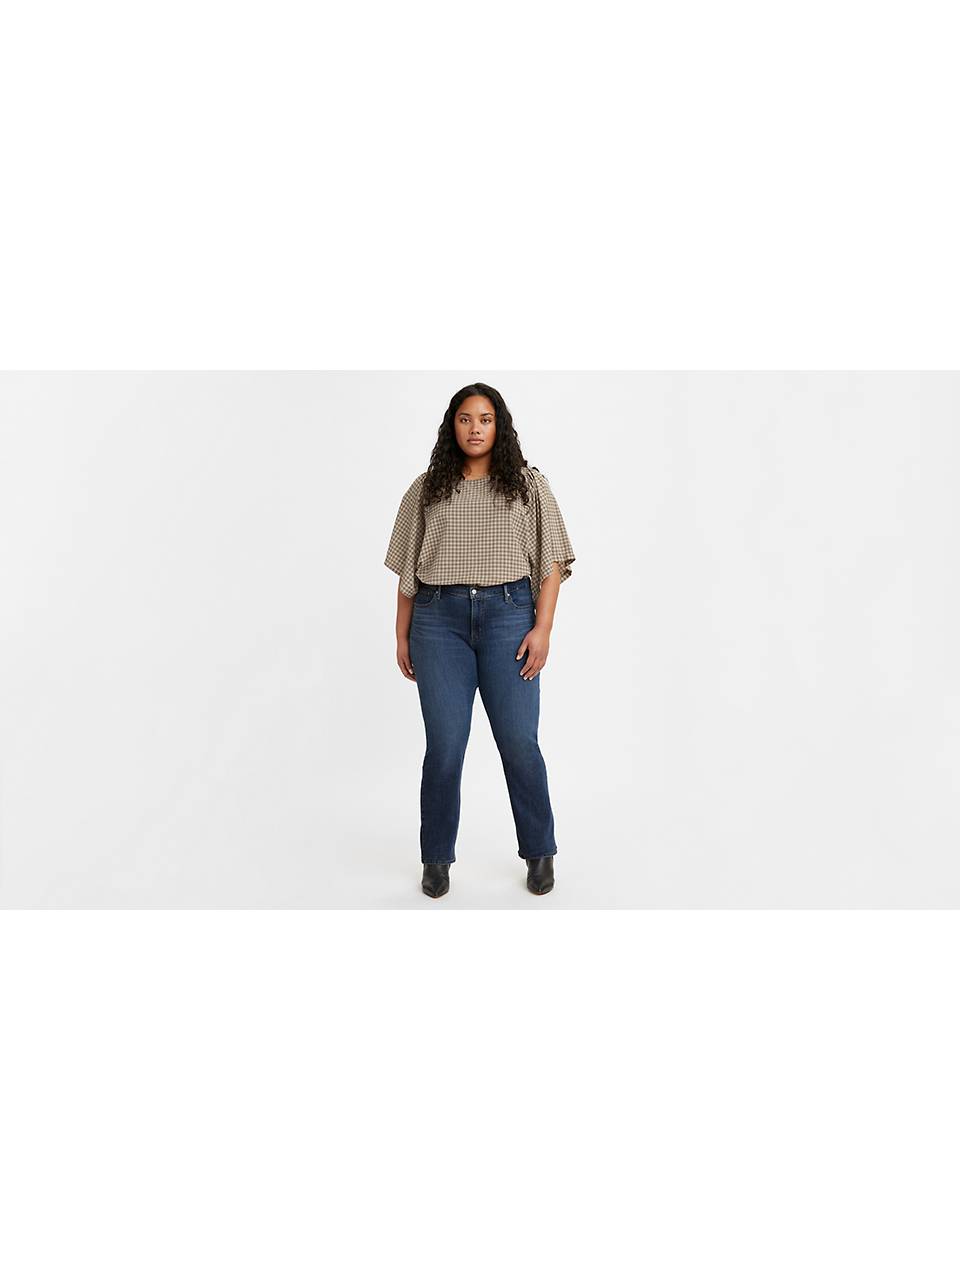 Plus Size Jeans: Shop Plus Jeans for Women | Levi's®